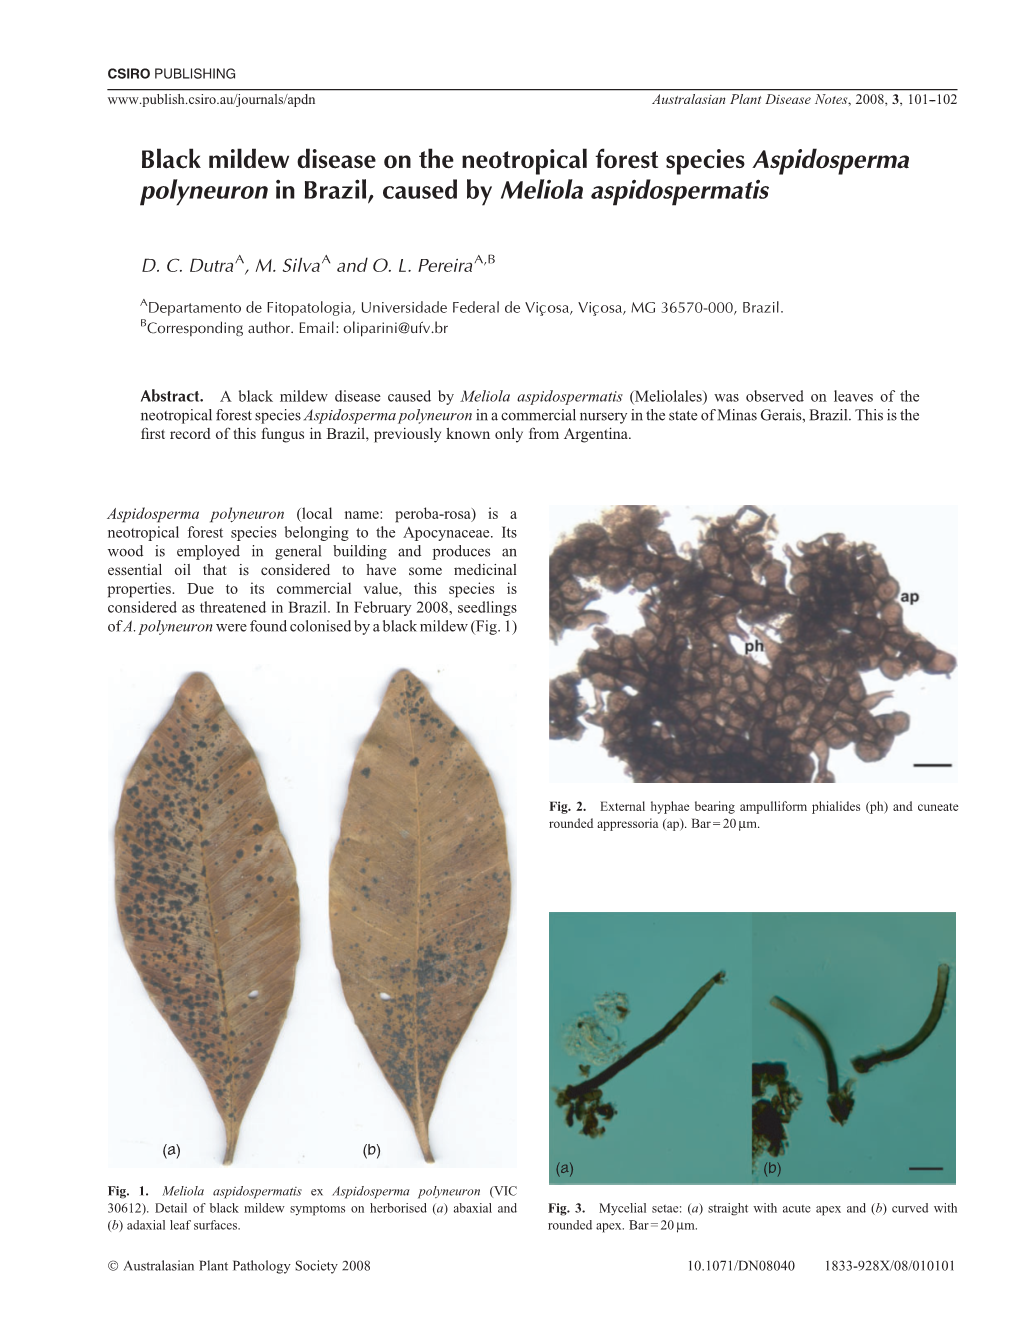 Black Mildew Disease on the Neotropical Forest Species Aspidosperma Polyneuron in Brazil, Caused by Meliola Aspidospermatis